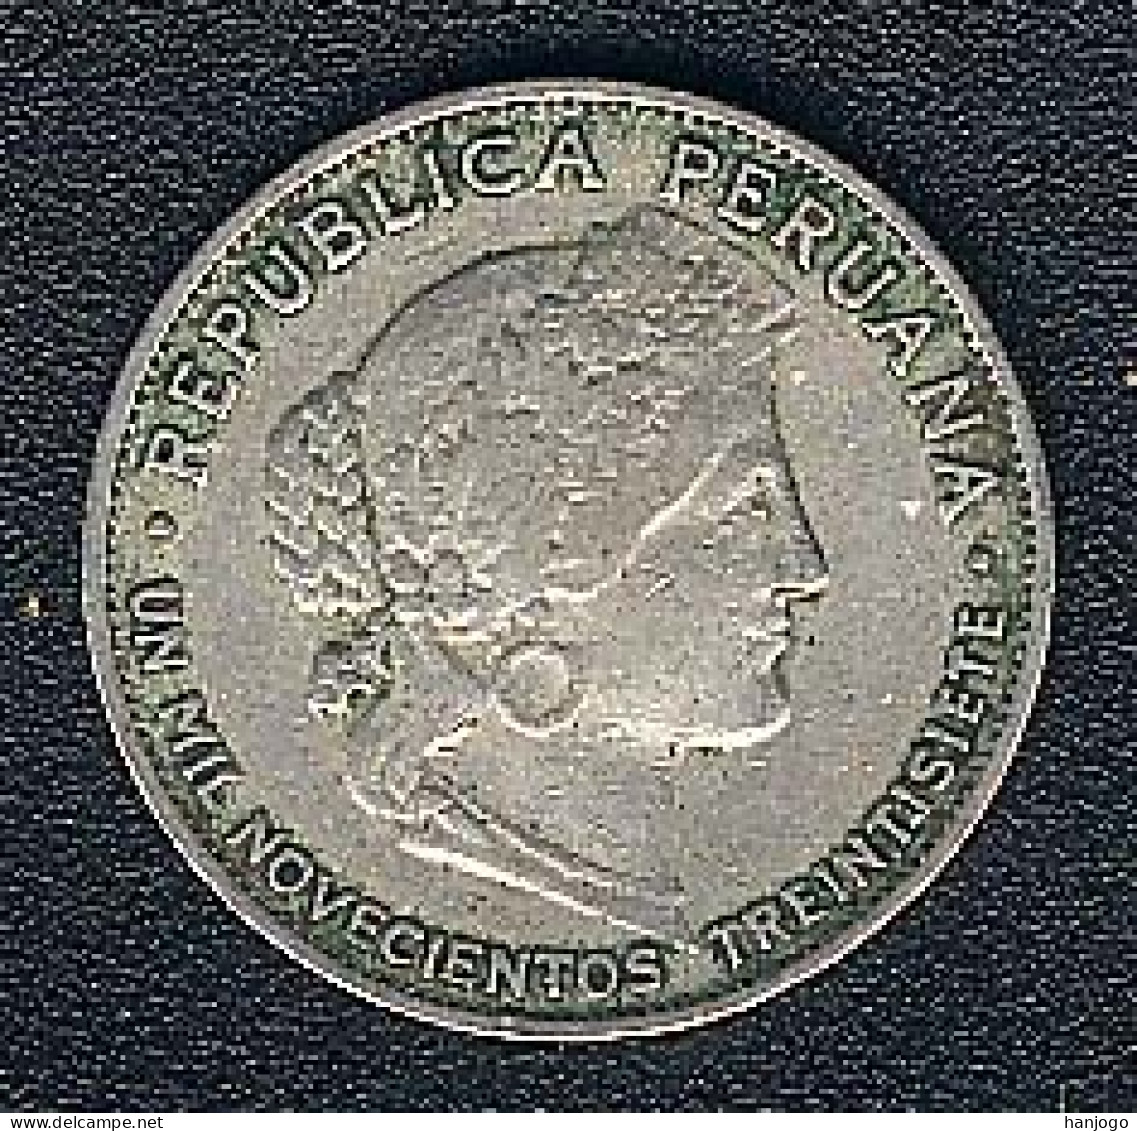 Peru, 5 Centavos 1937, CuNi - Peru